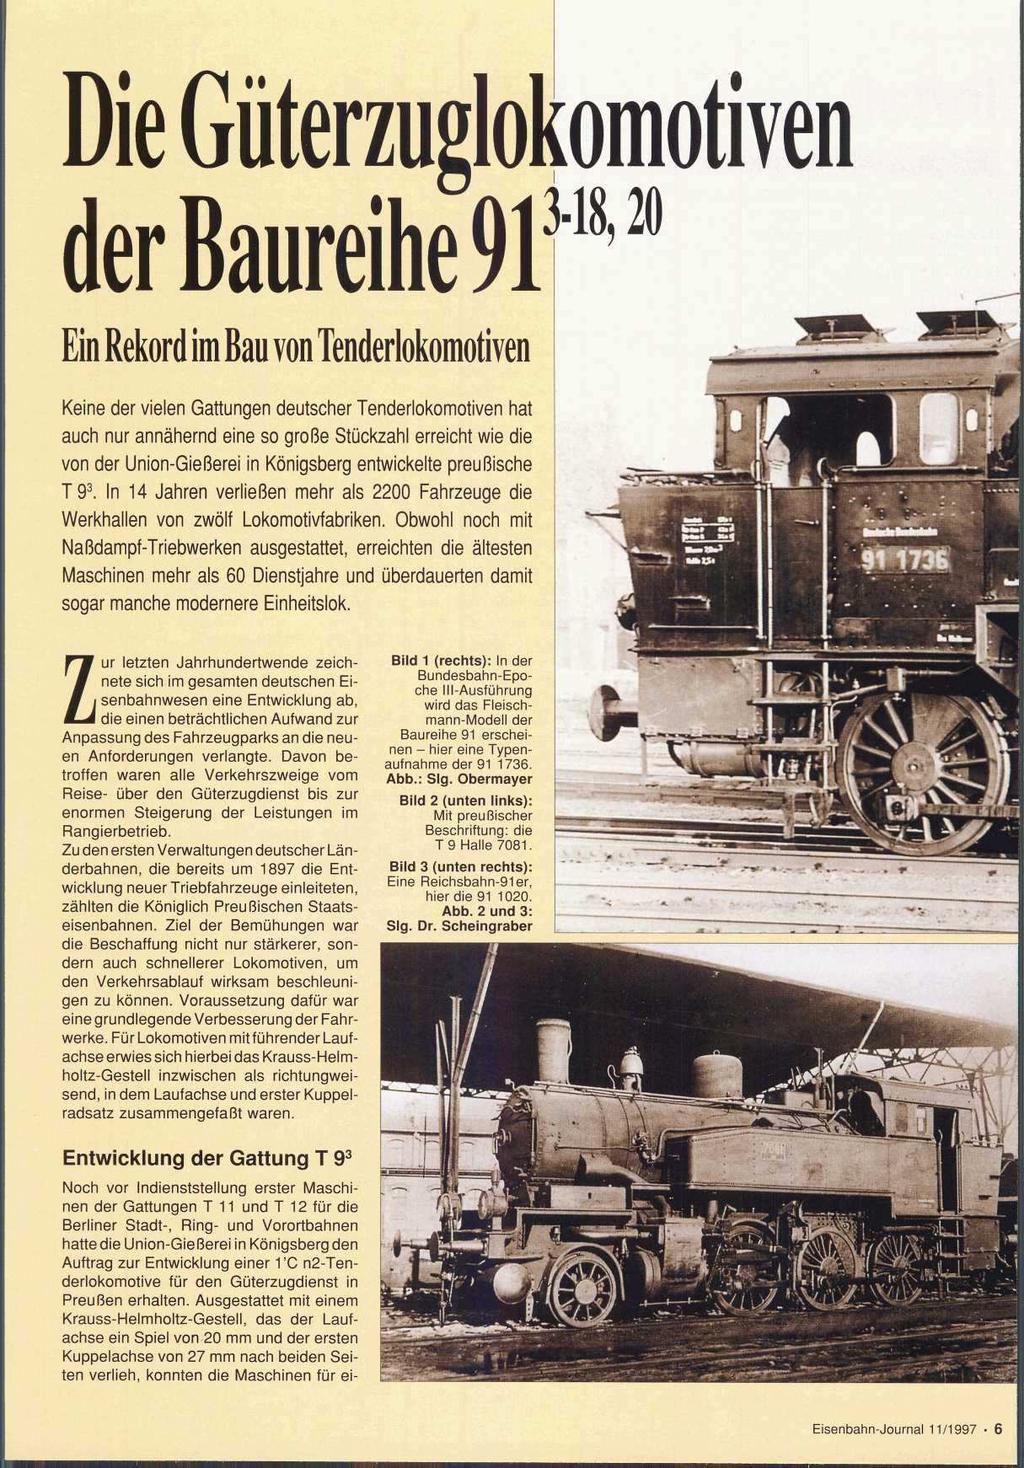 Ein Rekord im Bau von Tenderlokomotiven Keine der vielen Gattungen deutscher Tenderlokomotiven hat auch nur annähernd eine so große Stückzahl erreicht wie die von der Union-Gießerei in Königsberg